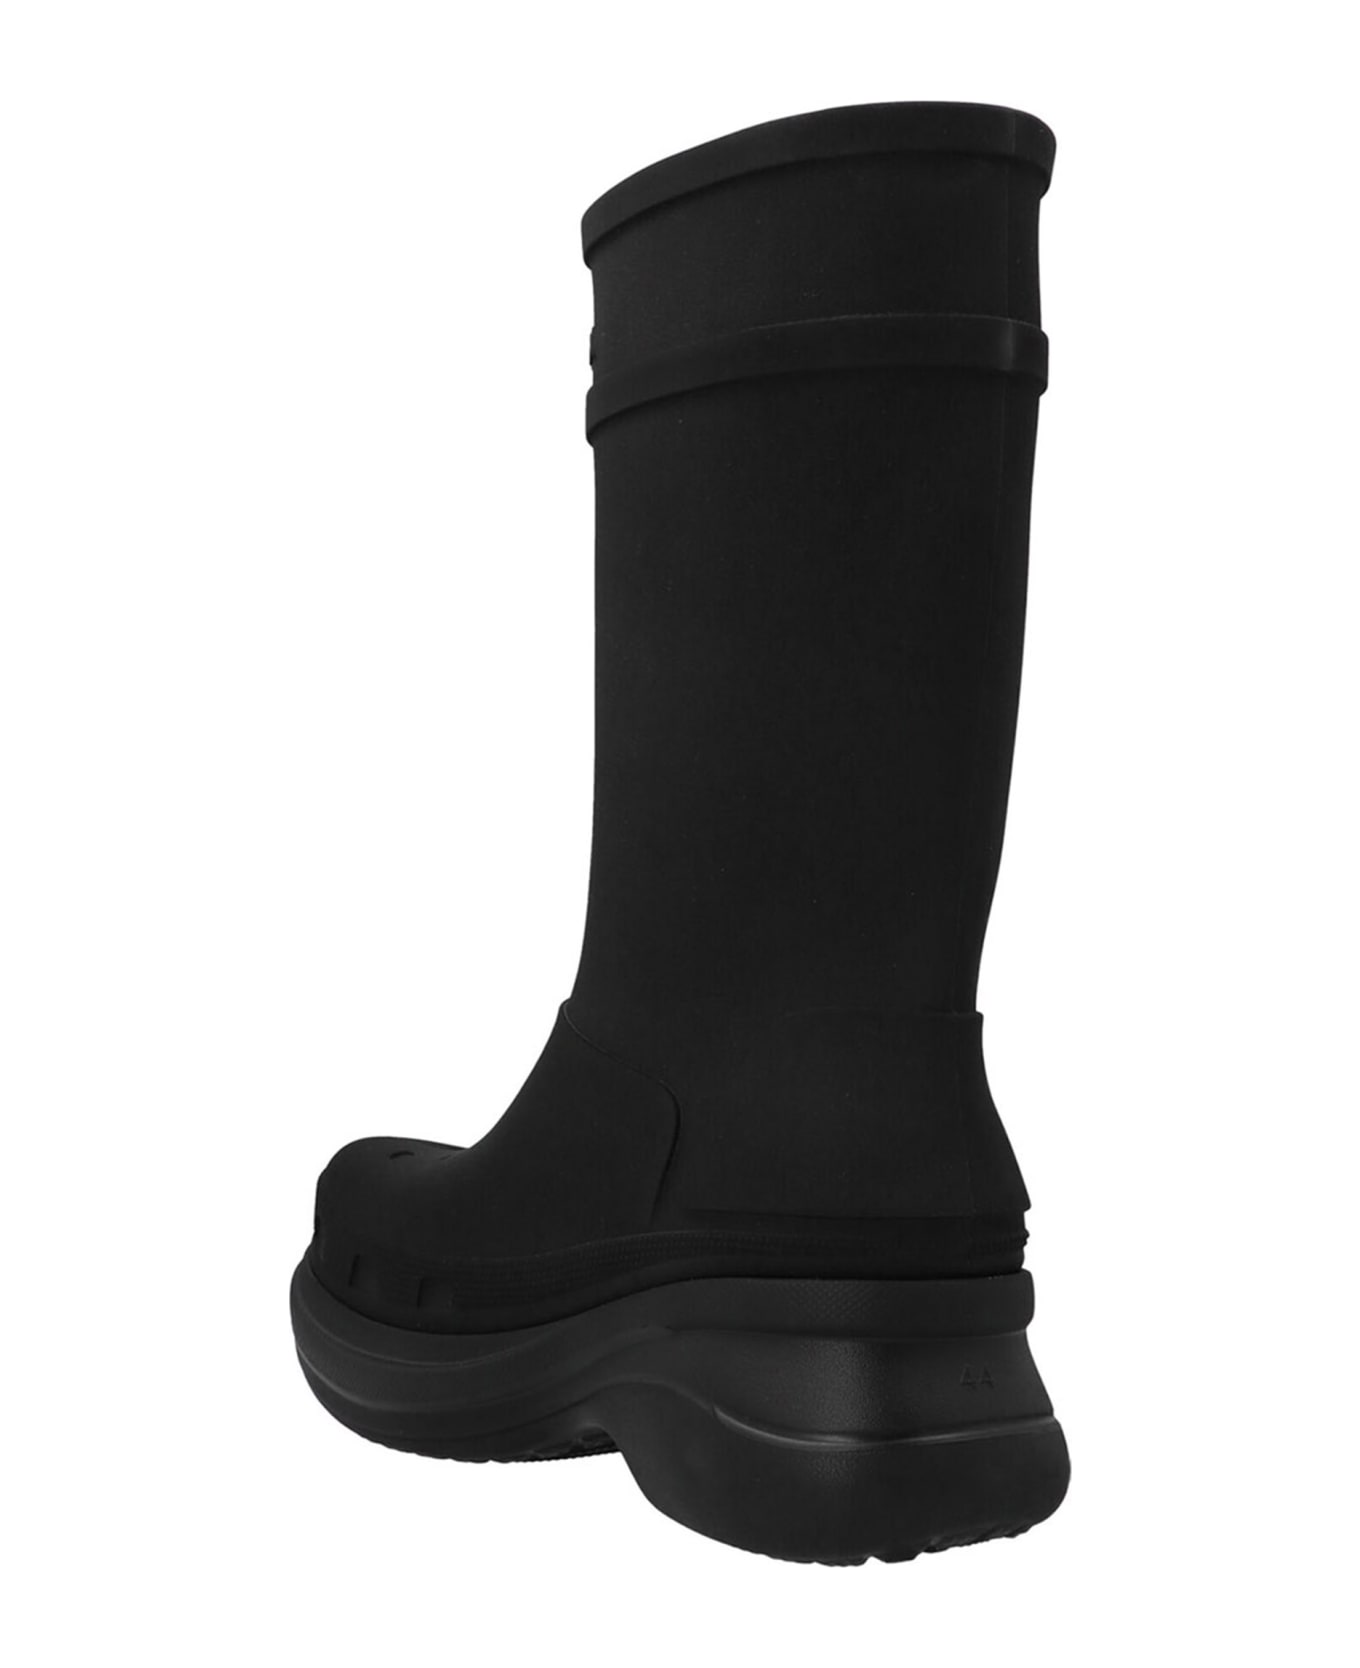 Balenciaga Crocs Boots - Black